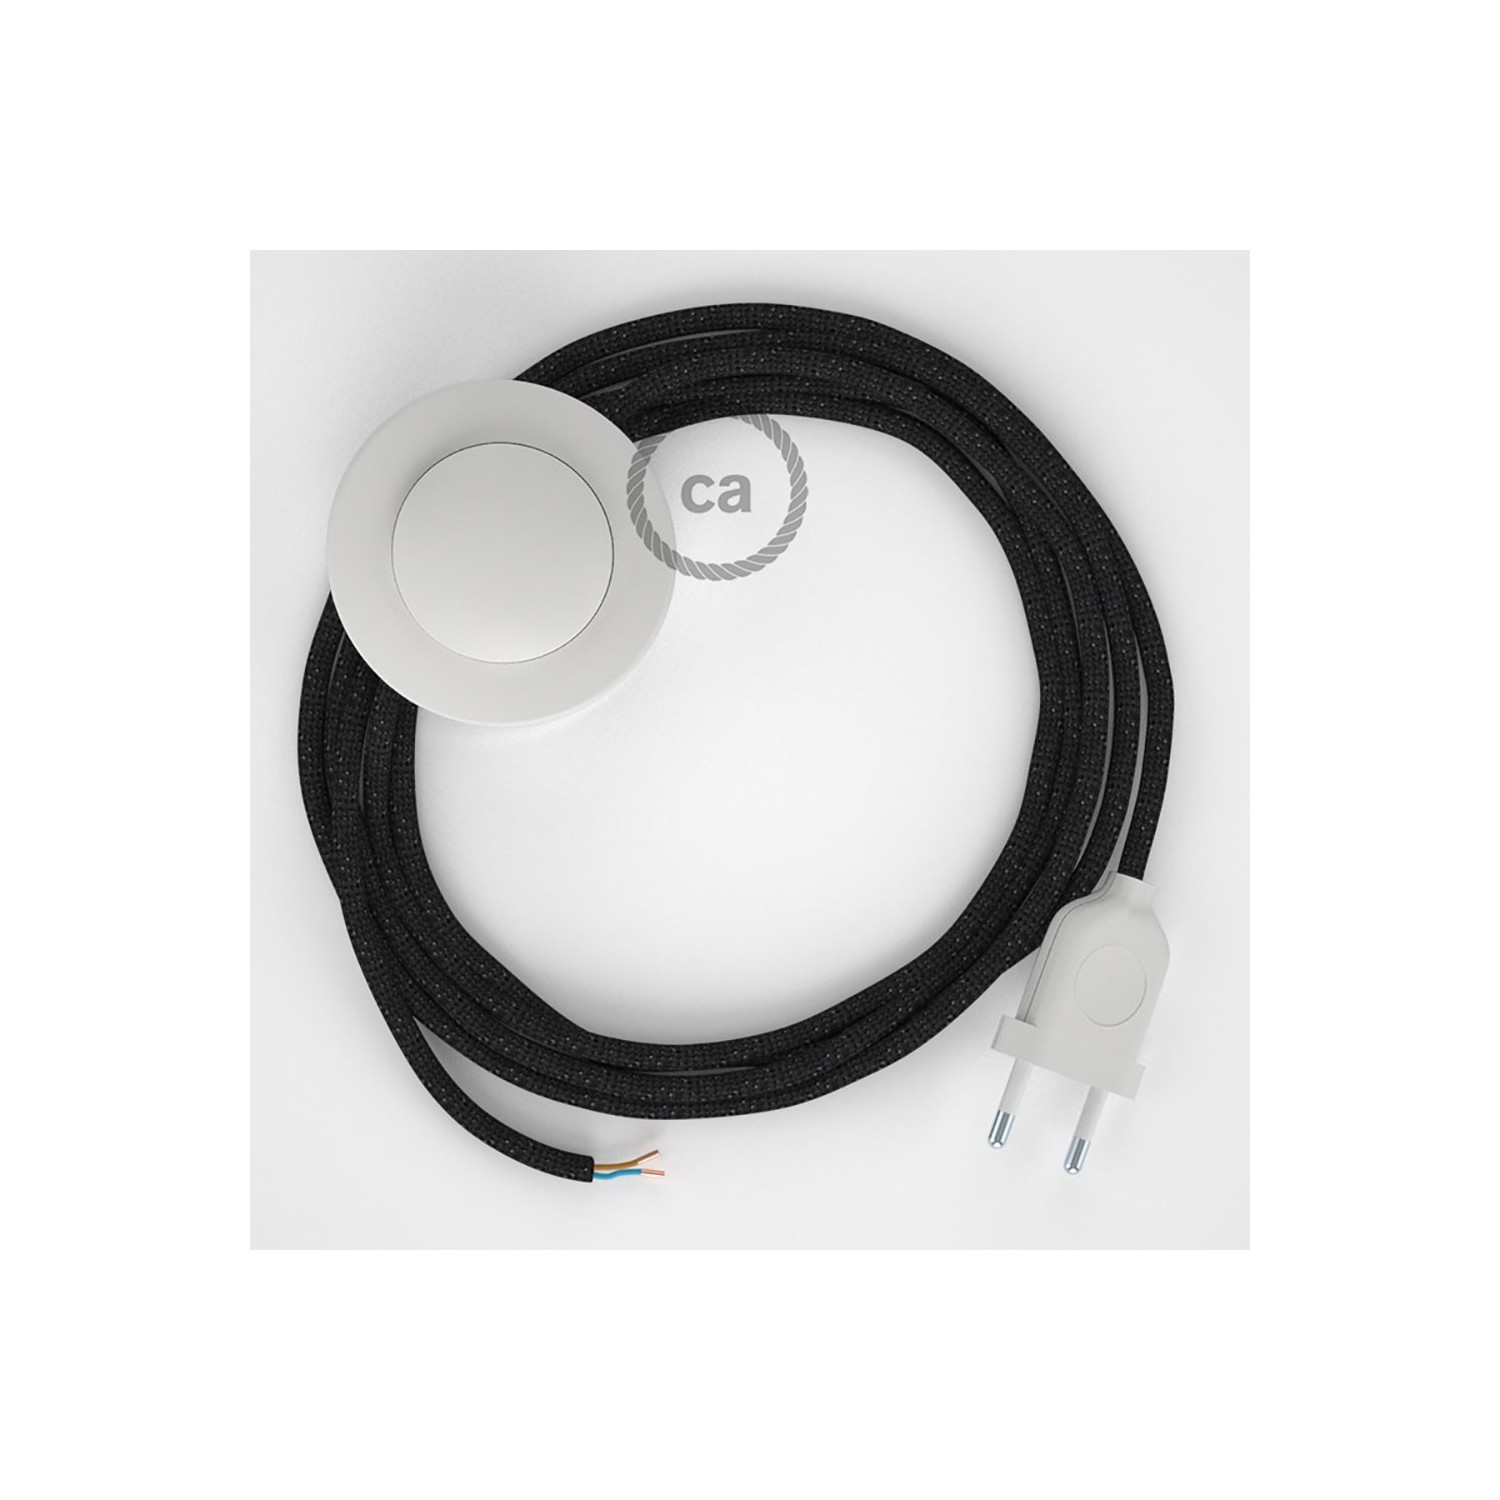 Cordon pour lampadaire, câble RL04 Effet Soie Paillettes Noir 3 m. Choisissez la couleur de la fiche et de l'interrupteur!